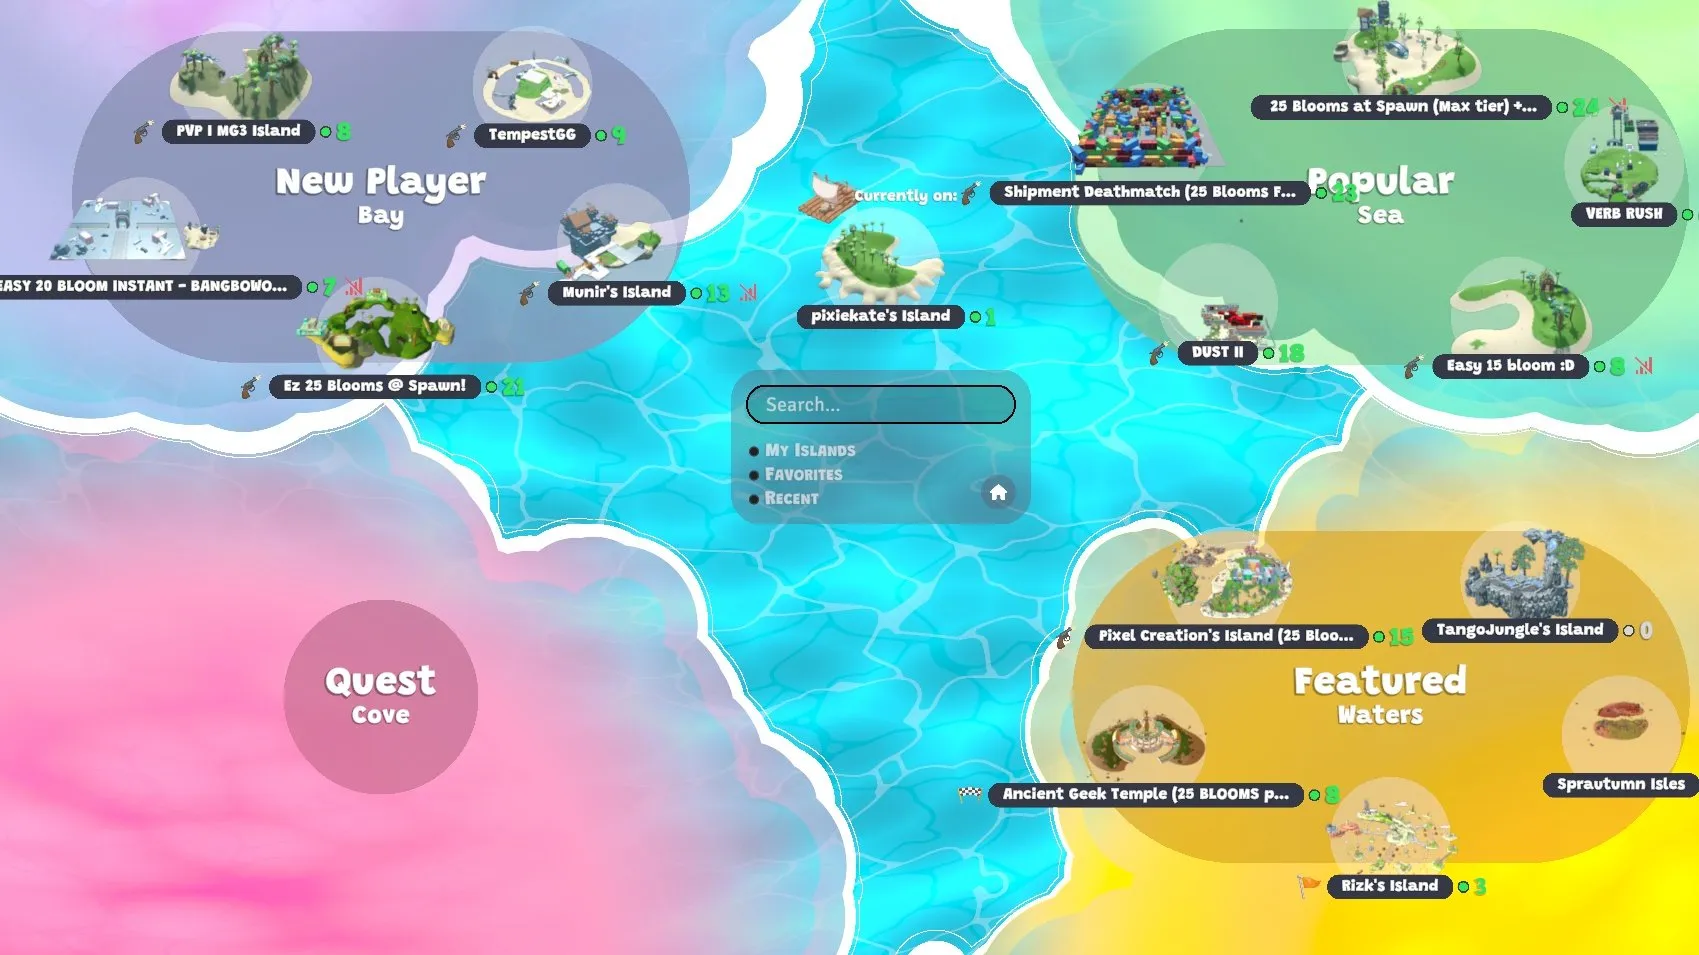 Popüler adaları, "öne çıkan" adaları ve yeni oyunculara yönelik adaları içeren bir haritayı gösteren oyun ekran görüntüsü.